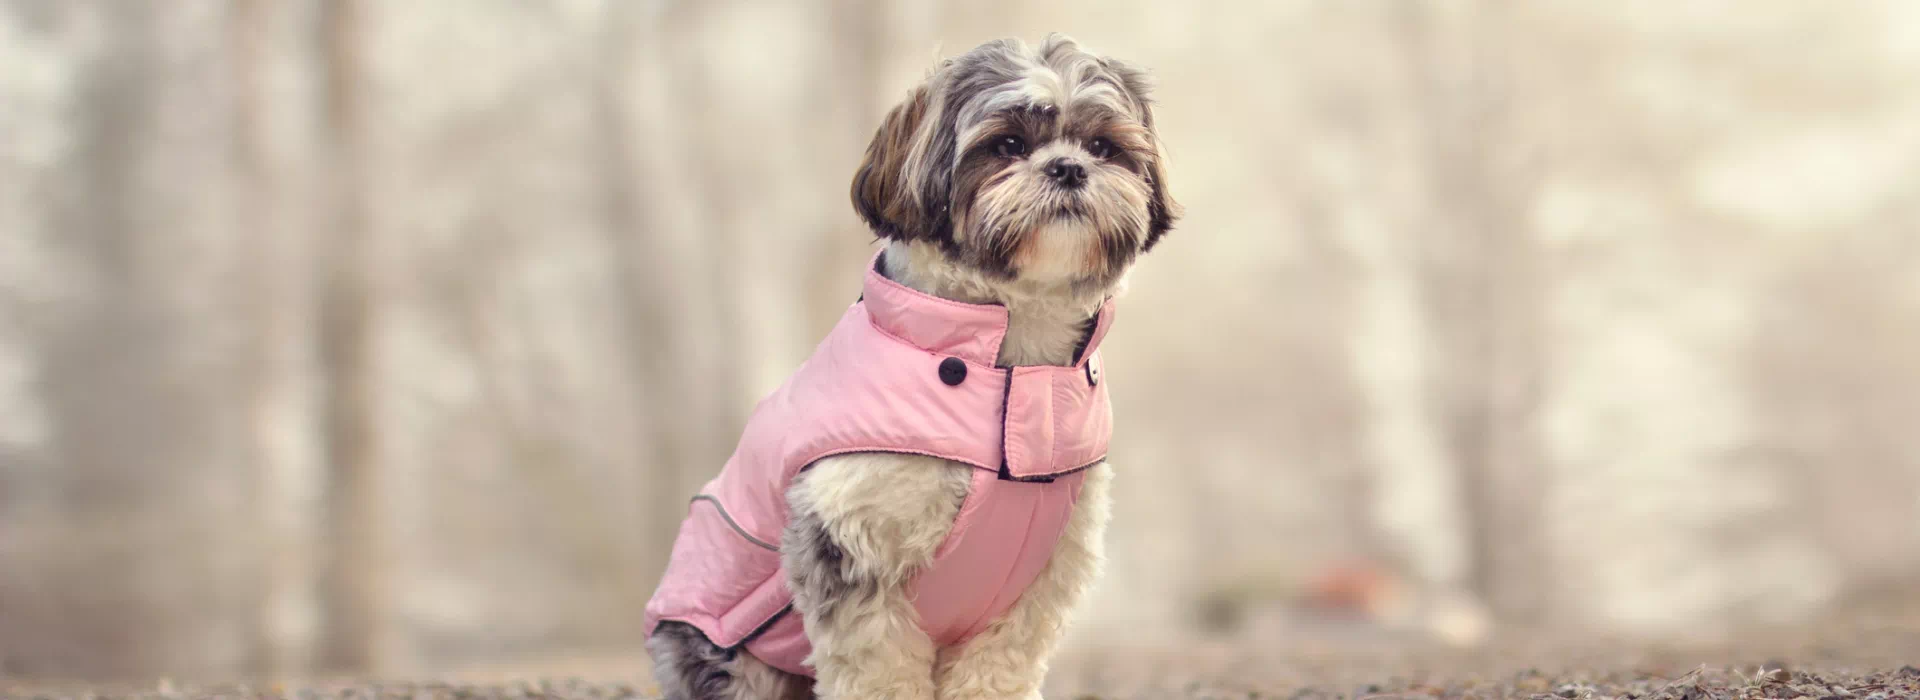 pies w różowej kurtce